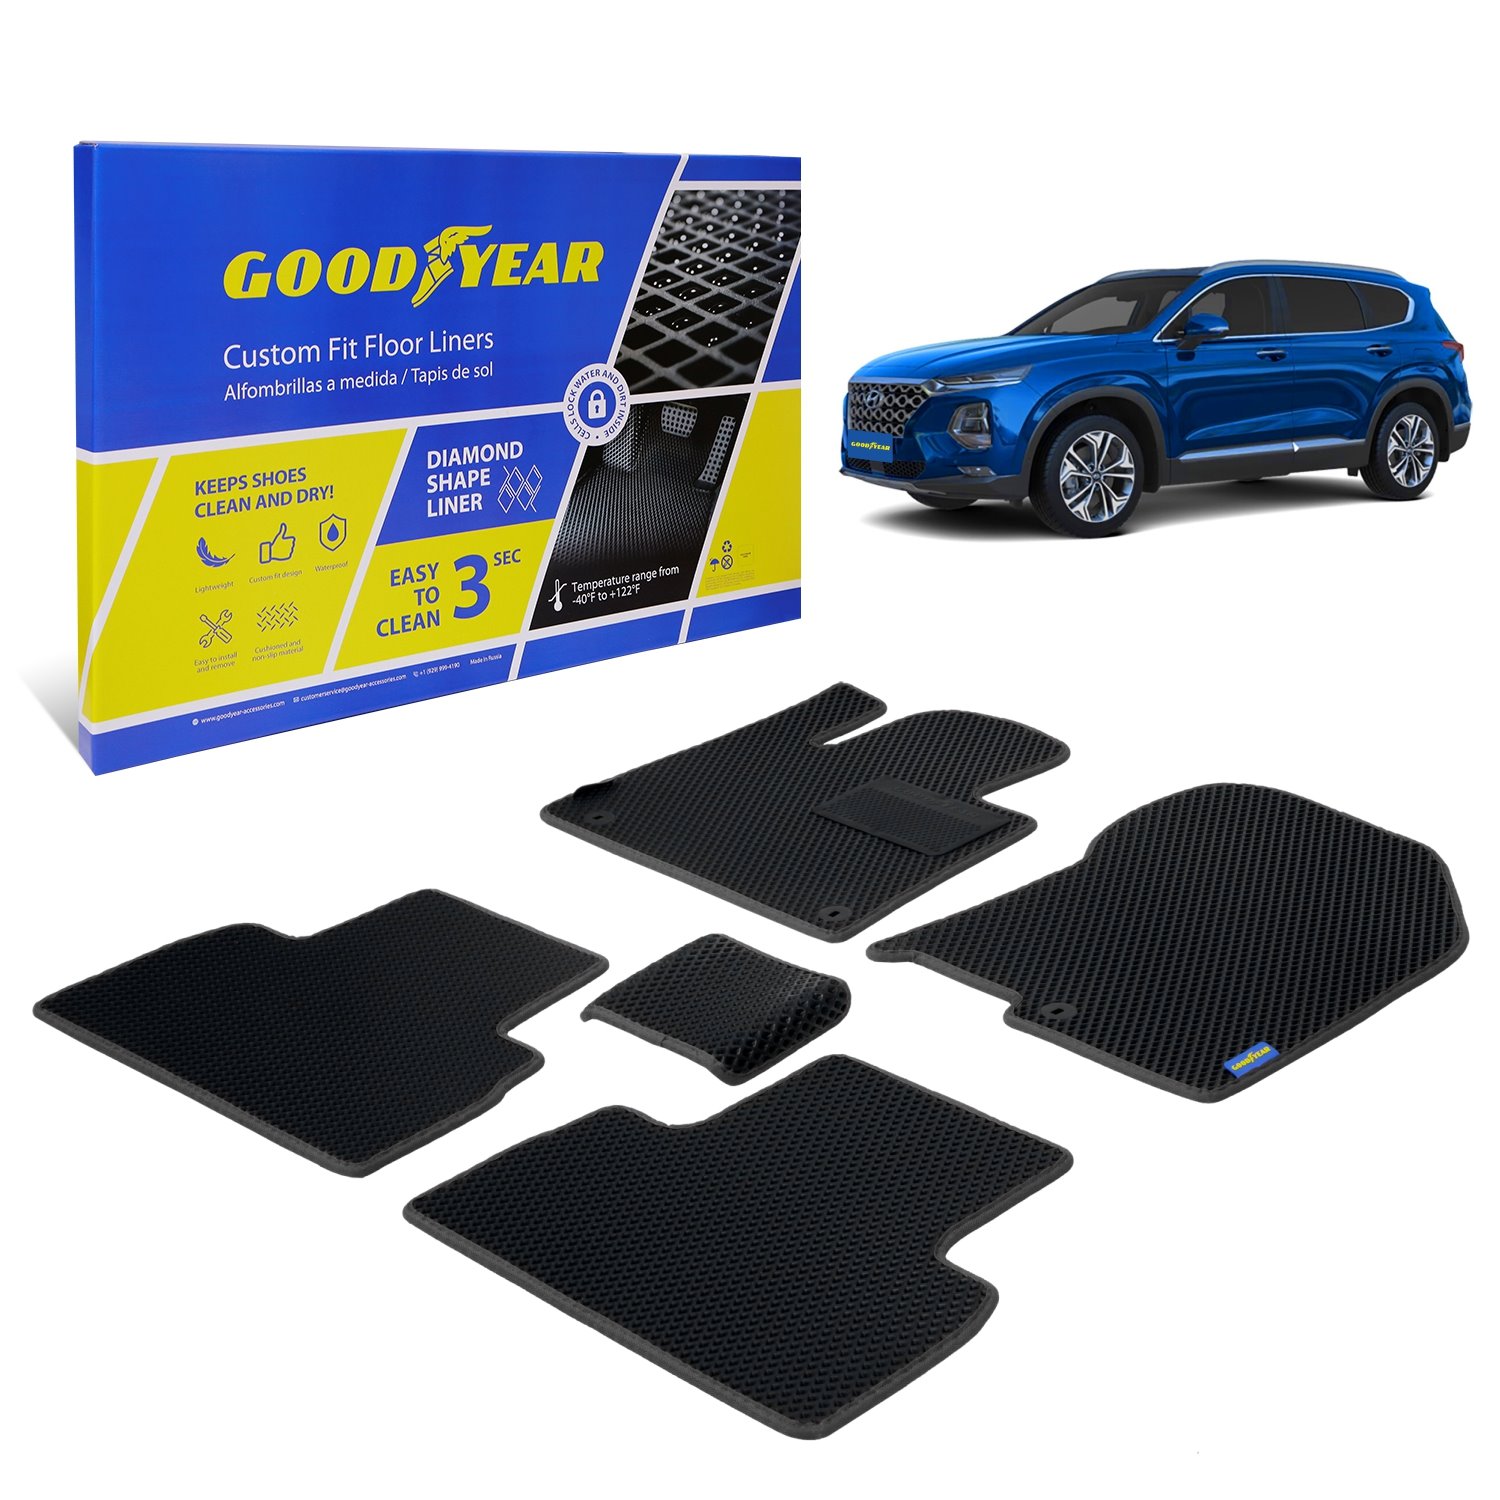 Goodyear Custom-Fit Floor Liners for 2019-2021 Hyundai Santa